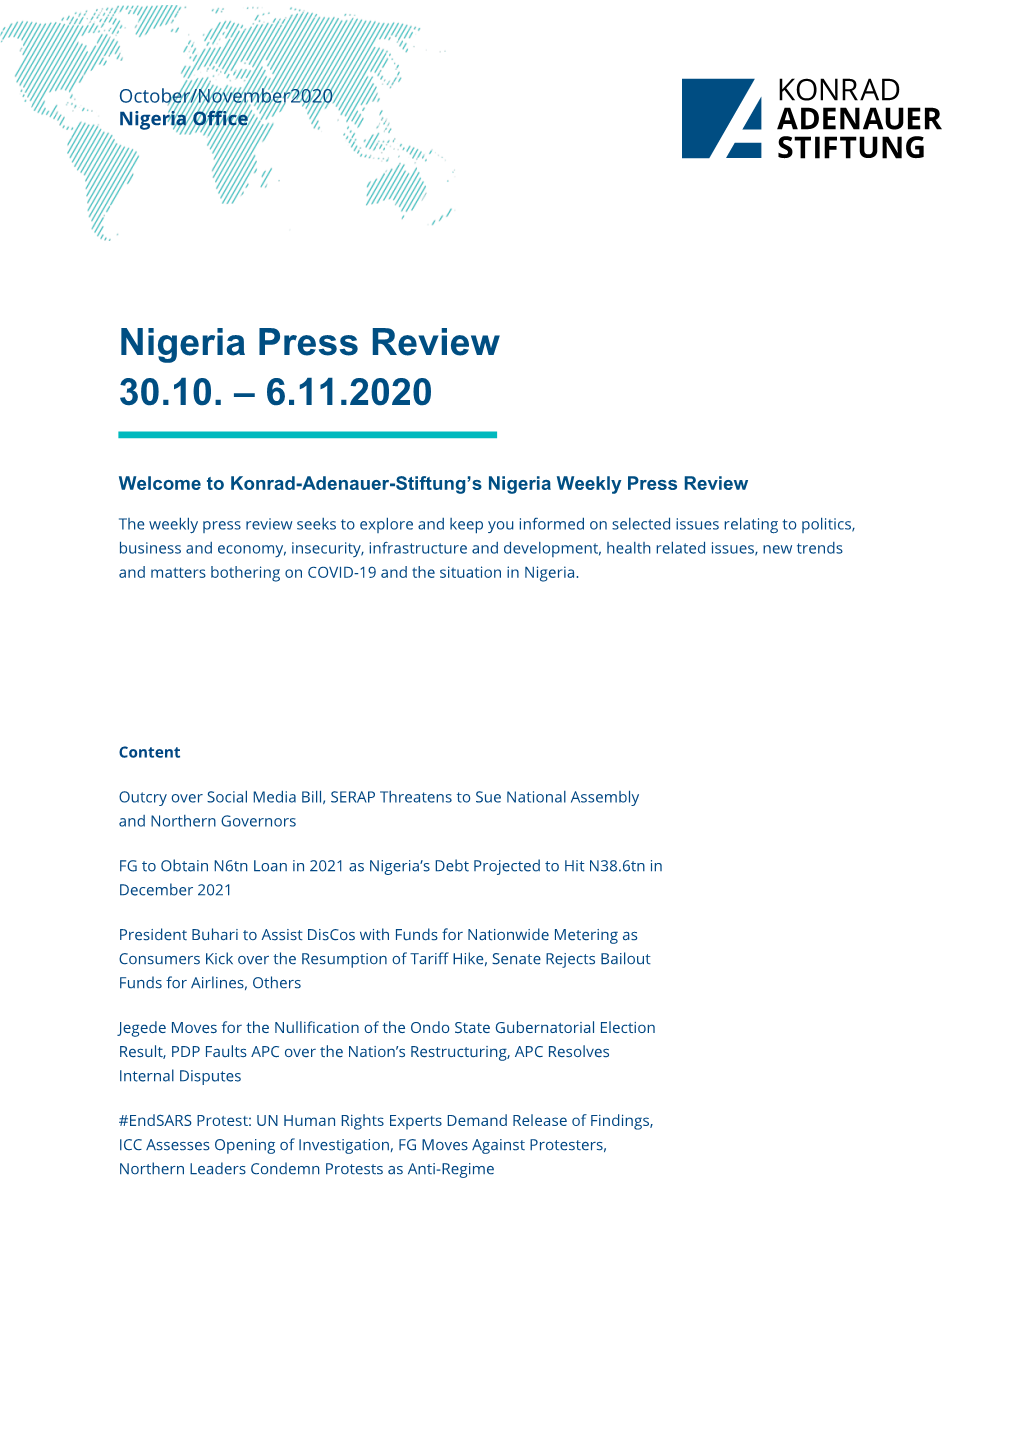 Nigeria Press Review 30.10. – 6.11.2020